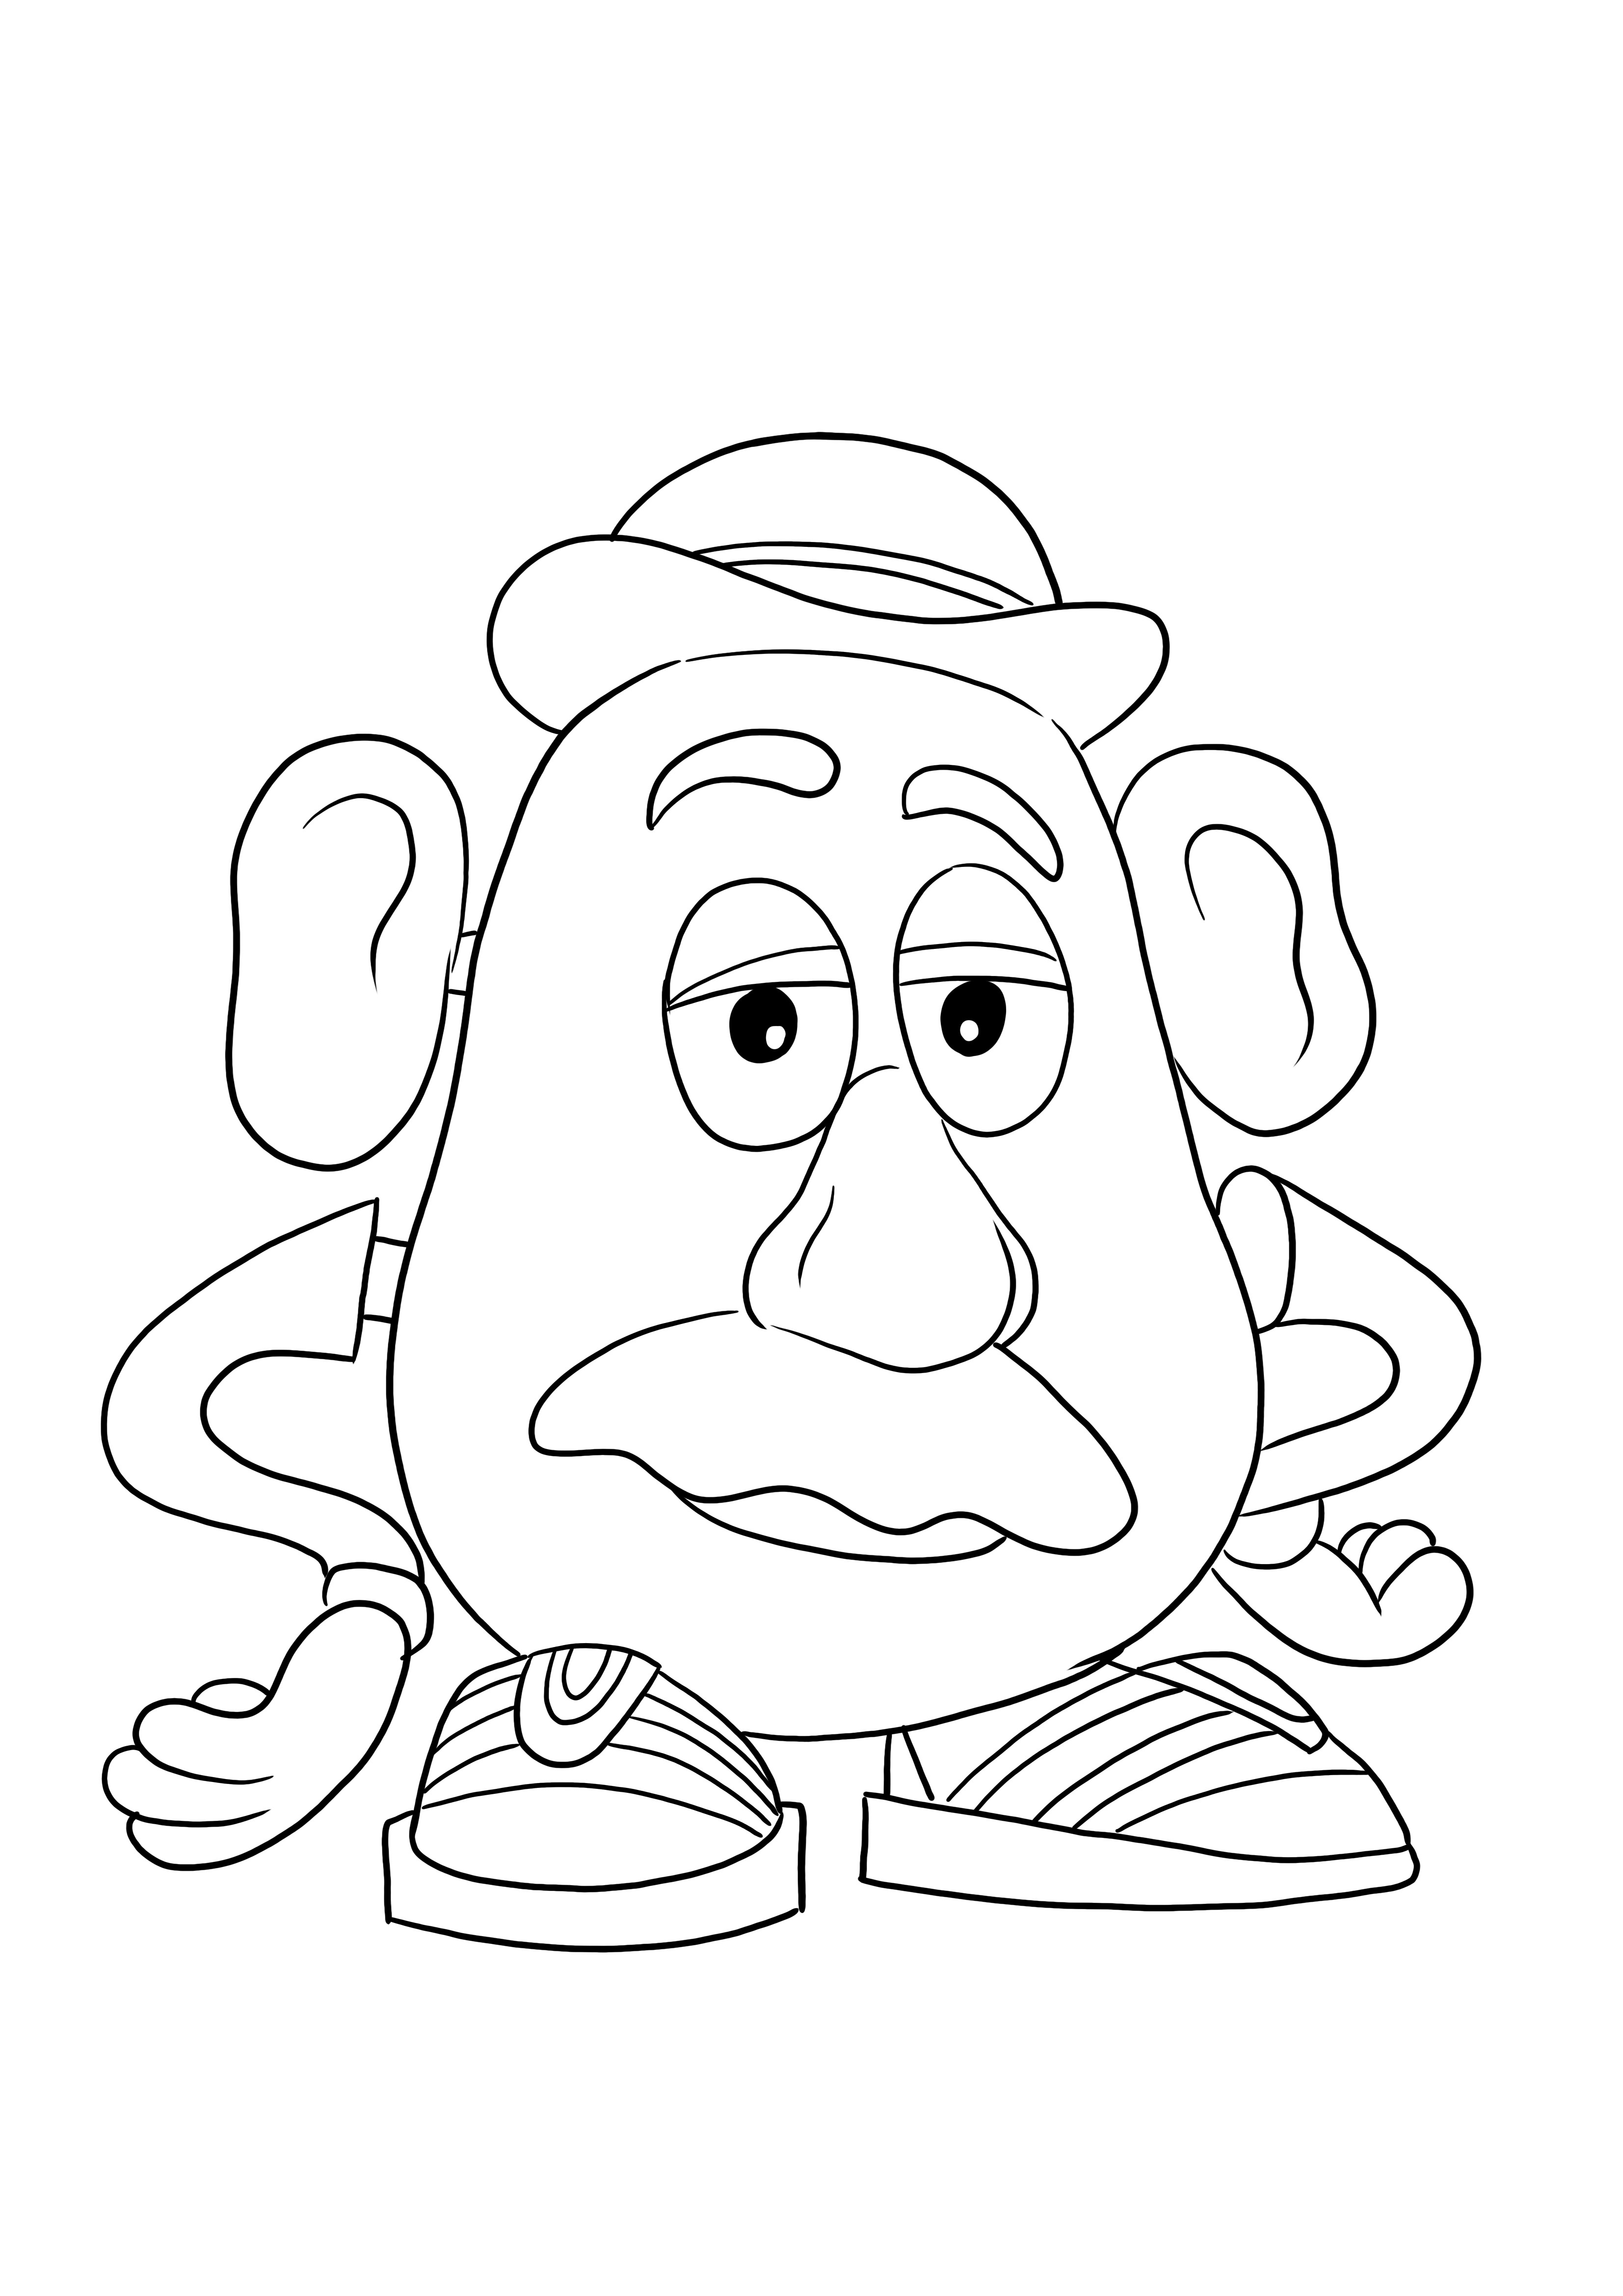 Mister Potato Head grátis para baixar a imagem para as crianças colorirem facilmente